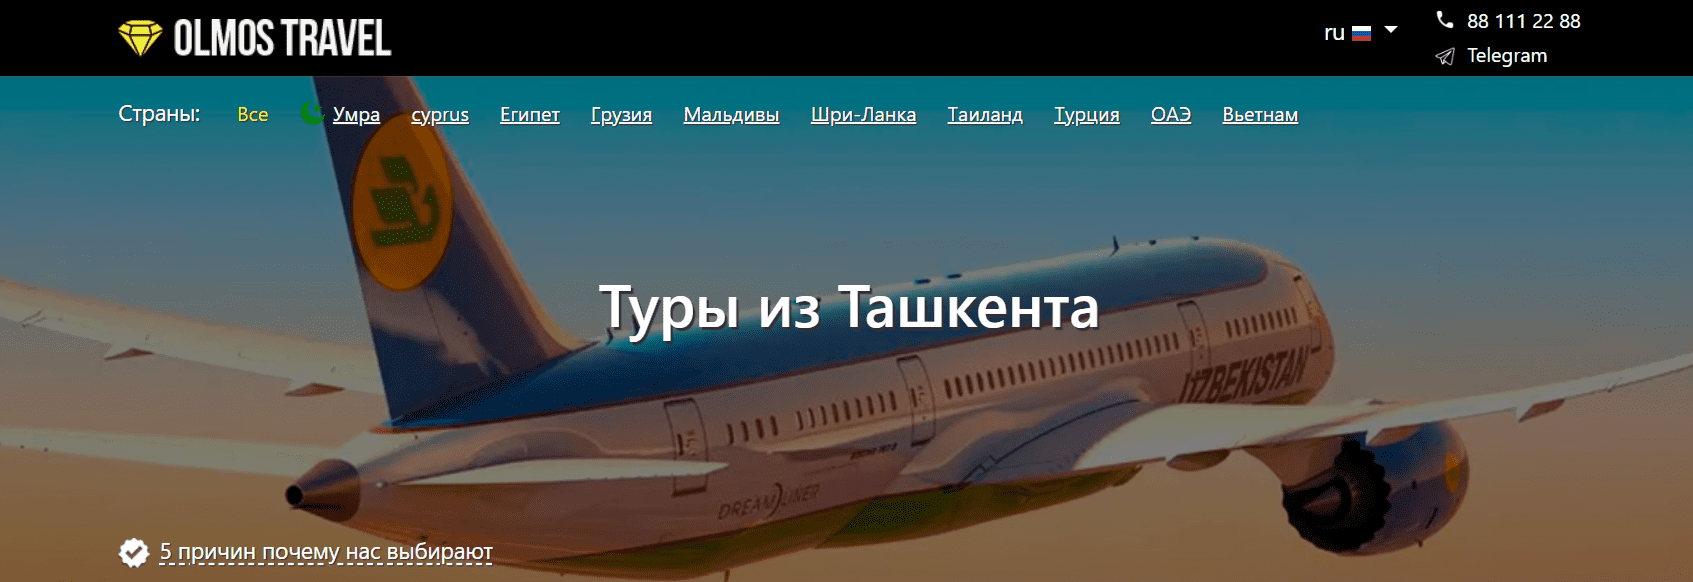 Olmos-travel.uz - официальный сайт